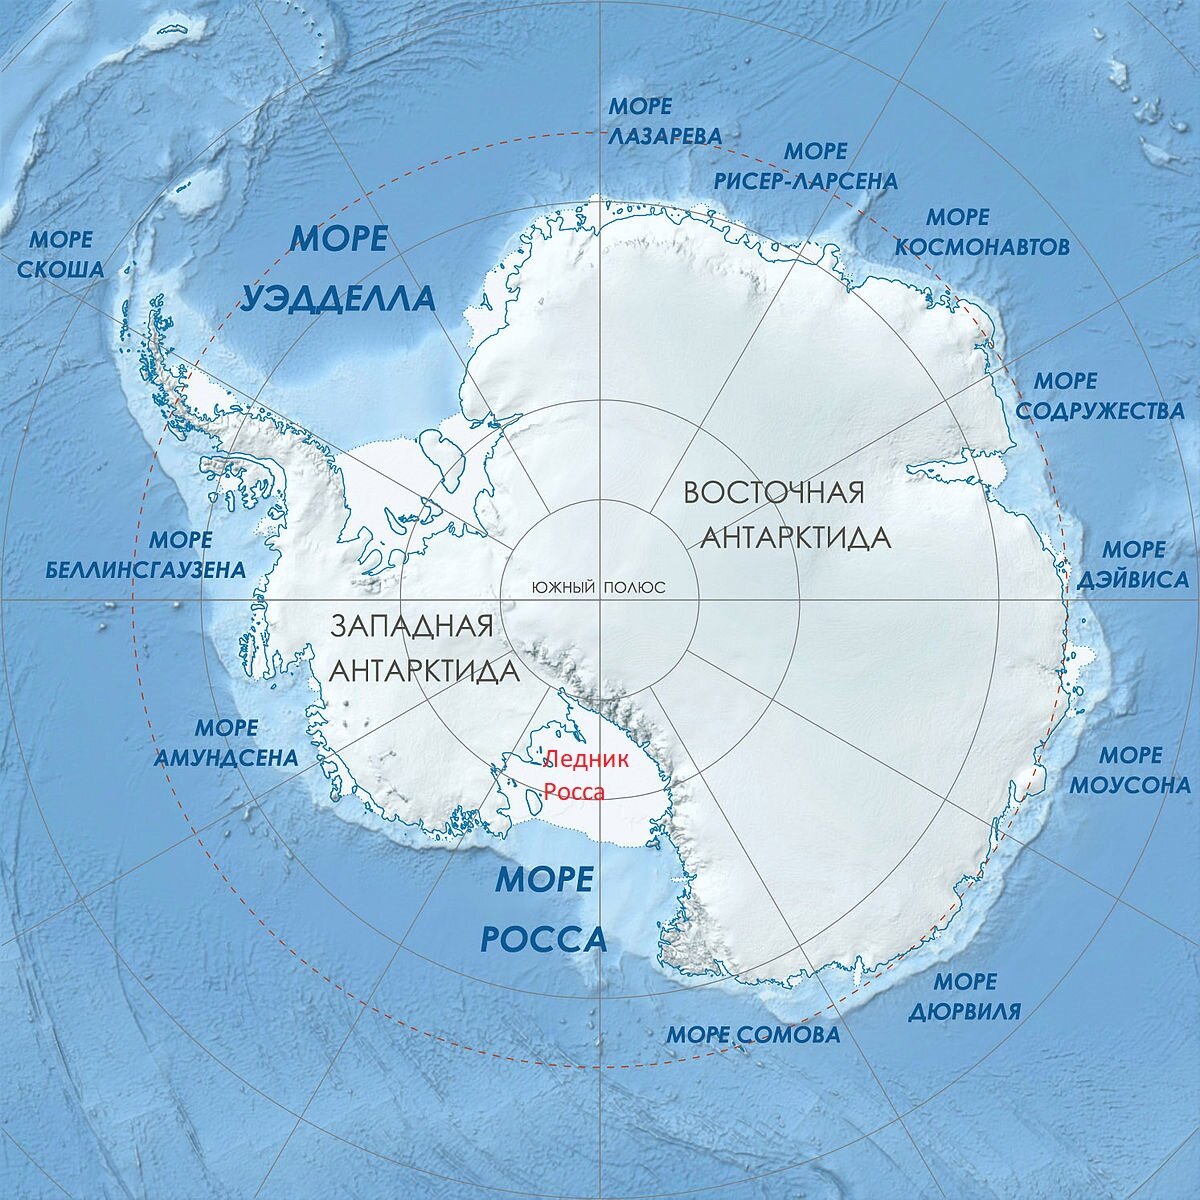 Великая подводная Стена, или "древняя каменная структура", разделяющая Антарктиду, "как огромная спица, идущая от центра колеса" - проходит на этой карте от центра вниз, по центральному, 180-му меридиану.